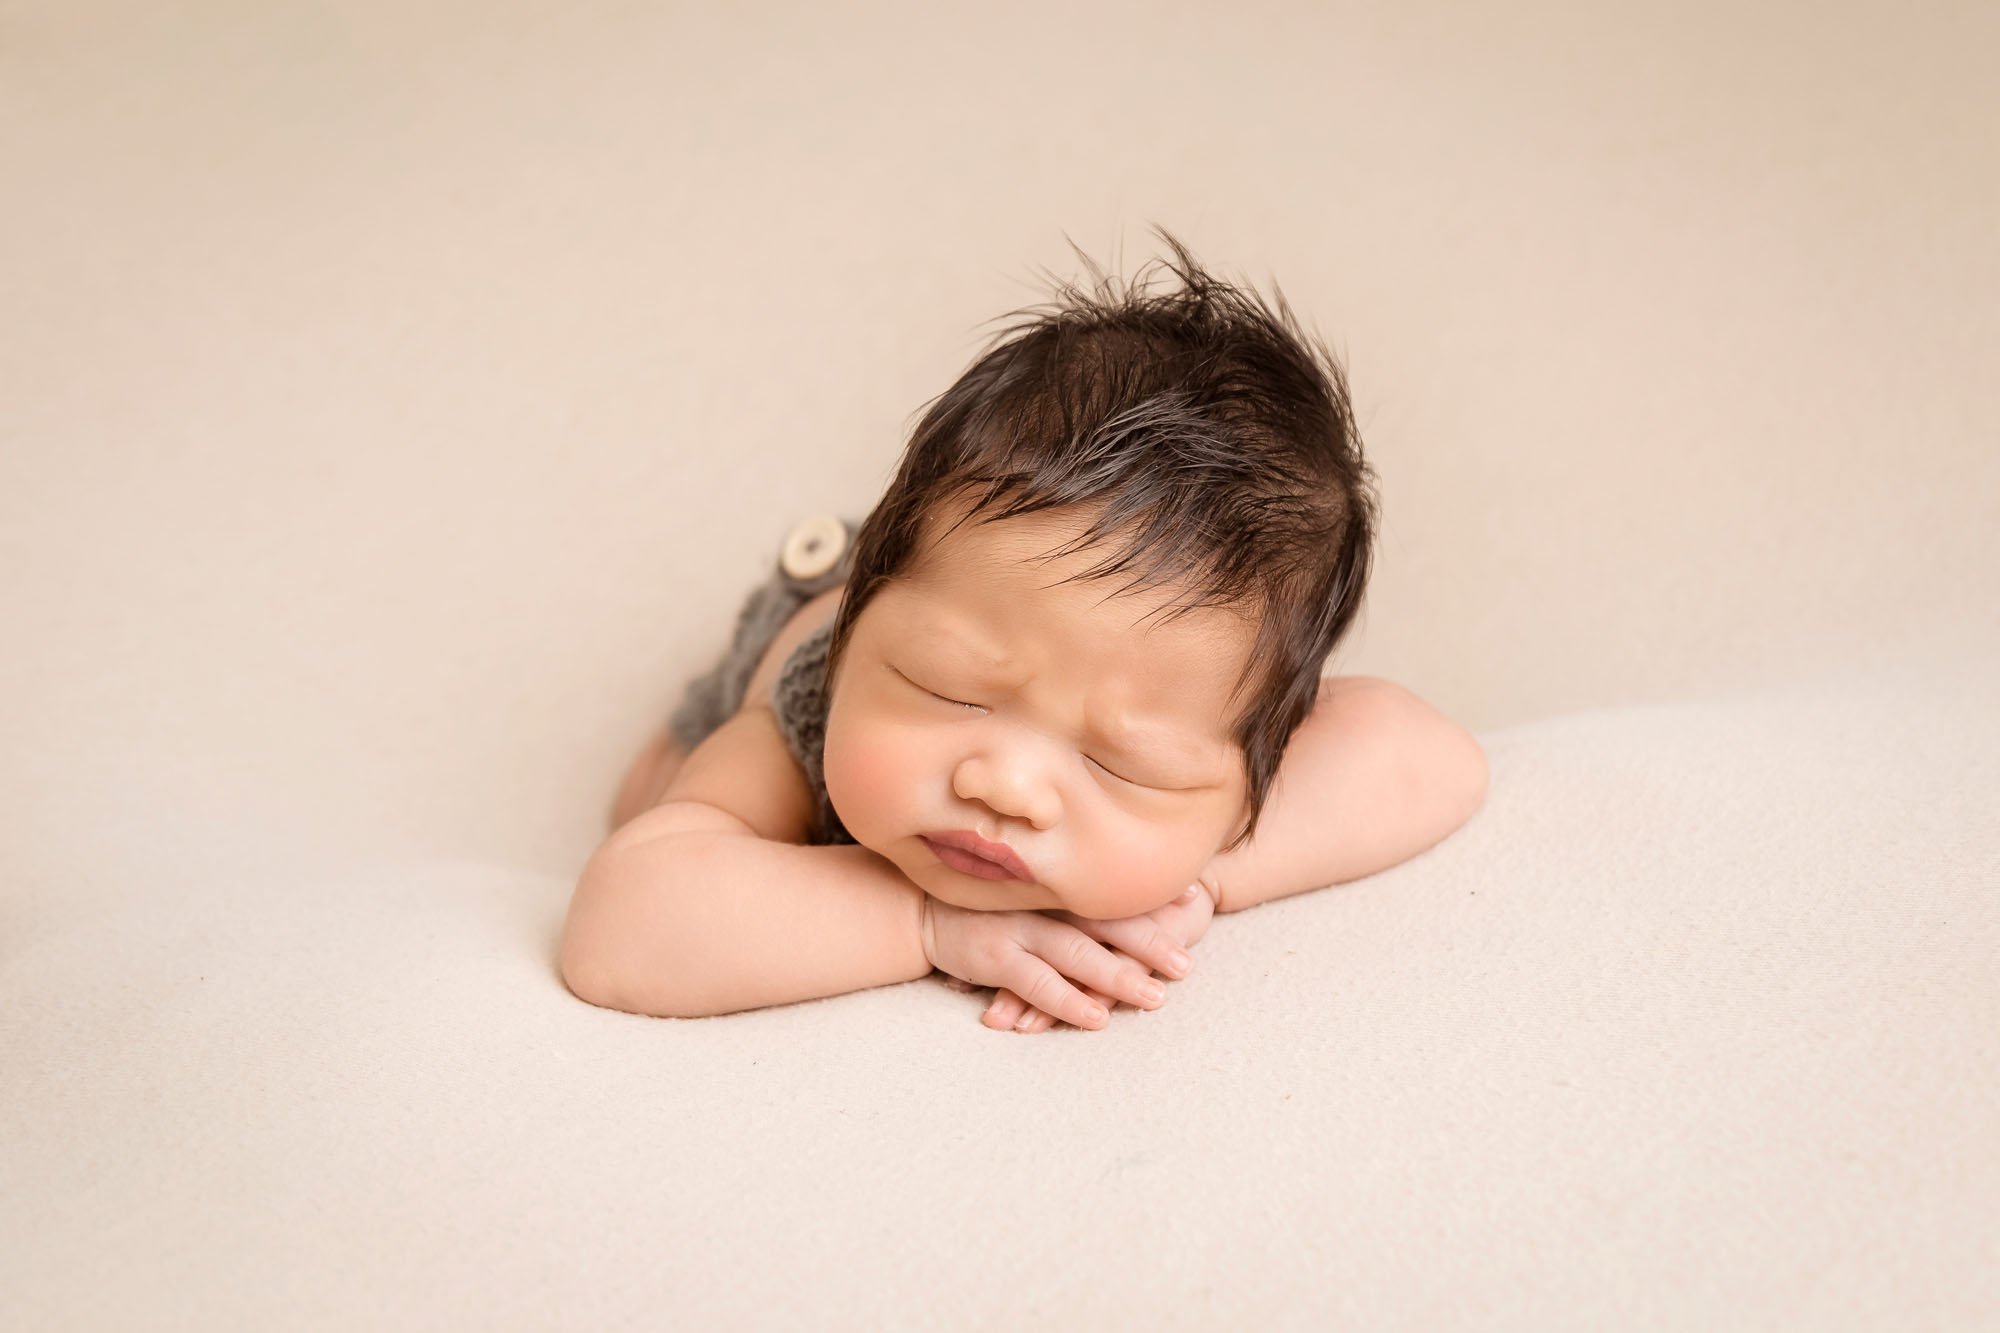 Newborn-photography-in-leeds-baby-front-facing.jpg